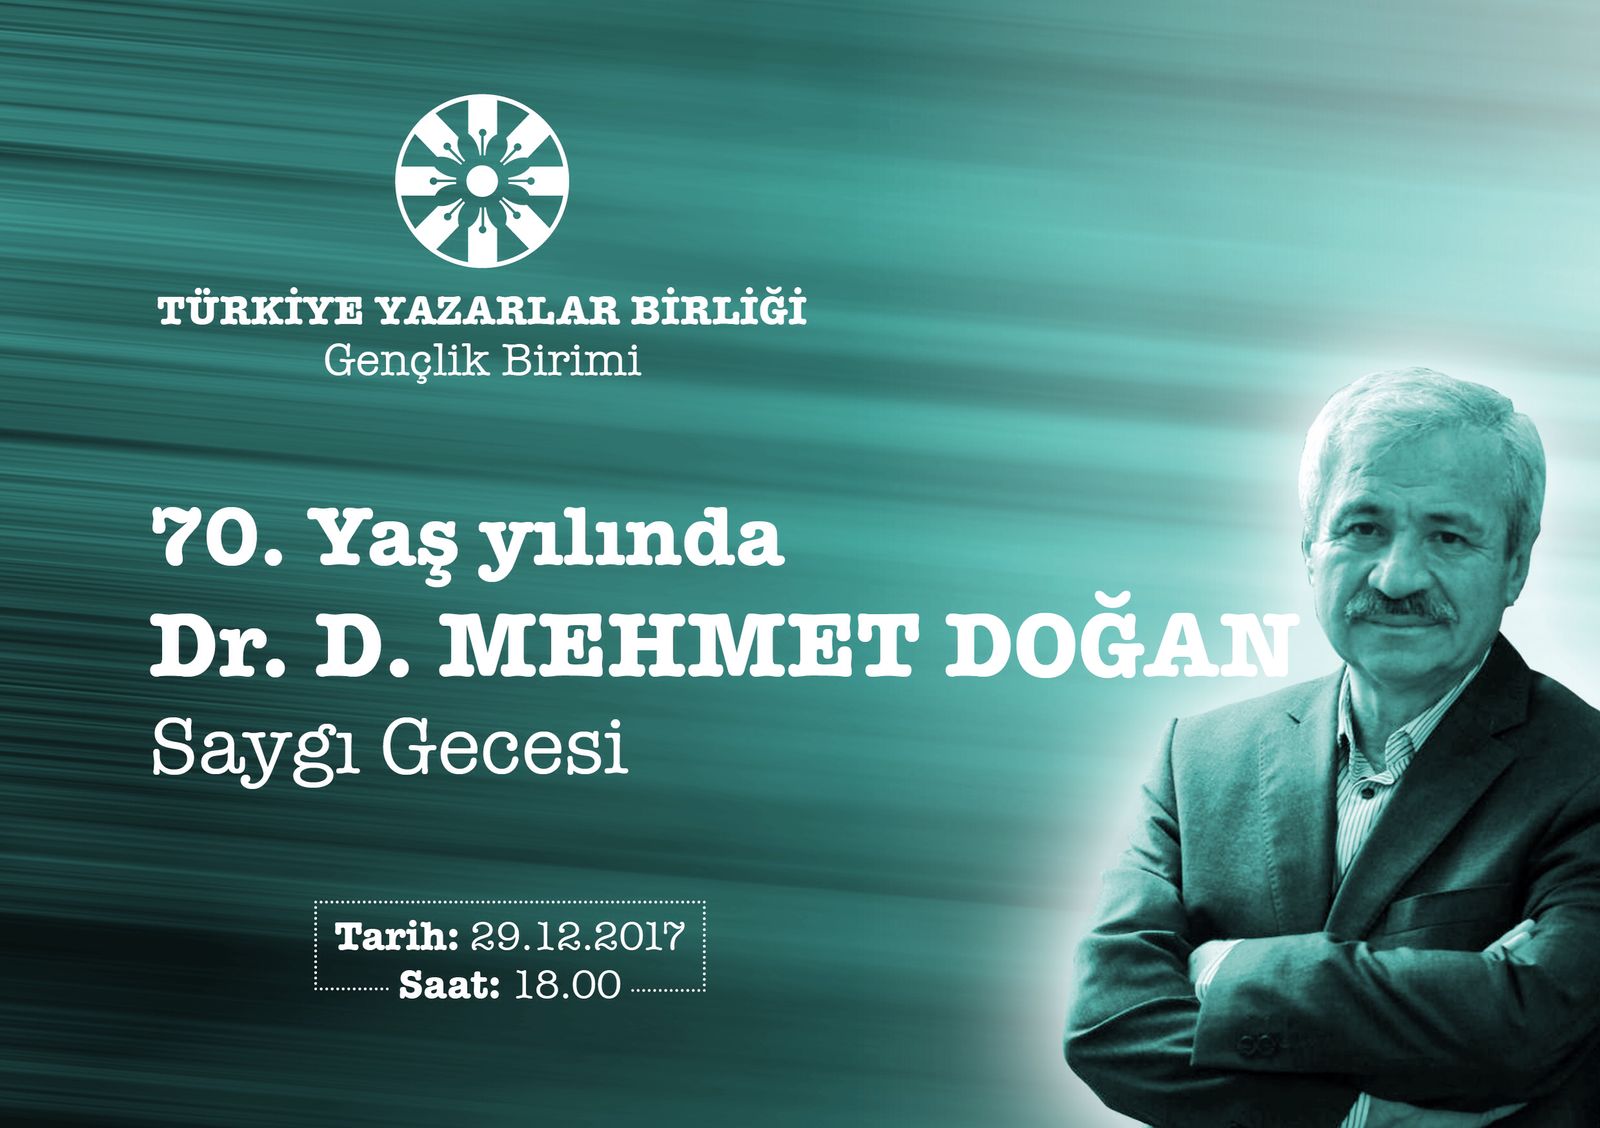 Genç TYB'den Dr. D. Mehmet Doğan'a Saygı Gecesi